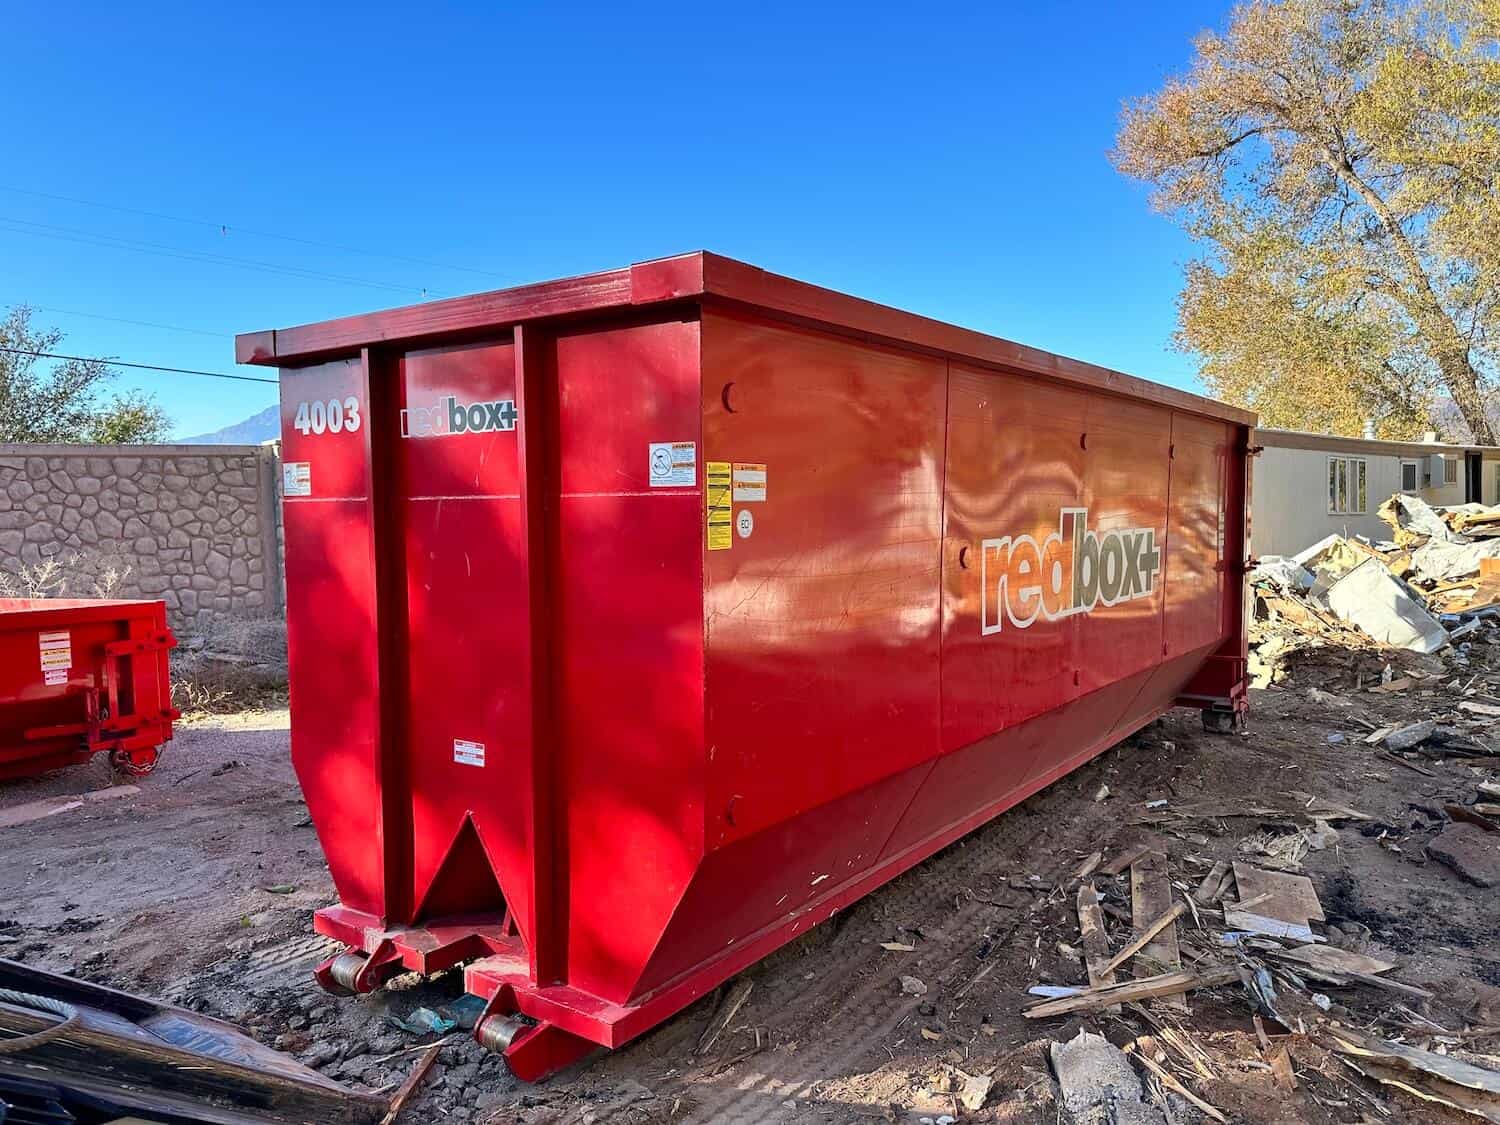 40 yard dumpster rental in salt lake